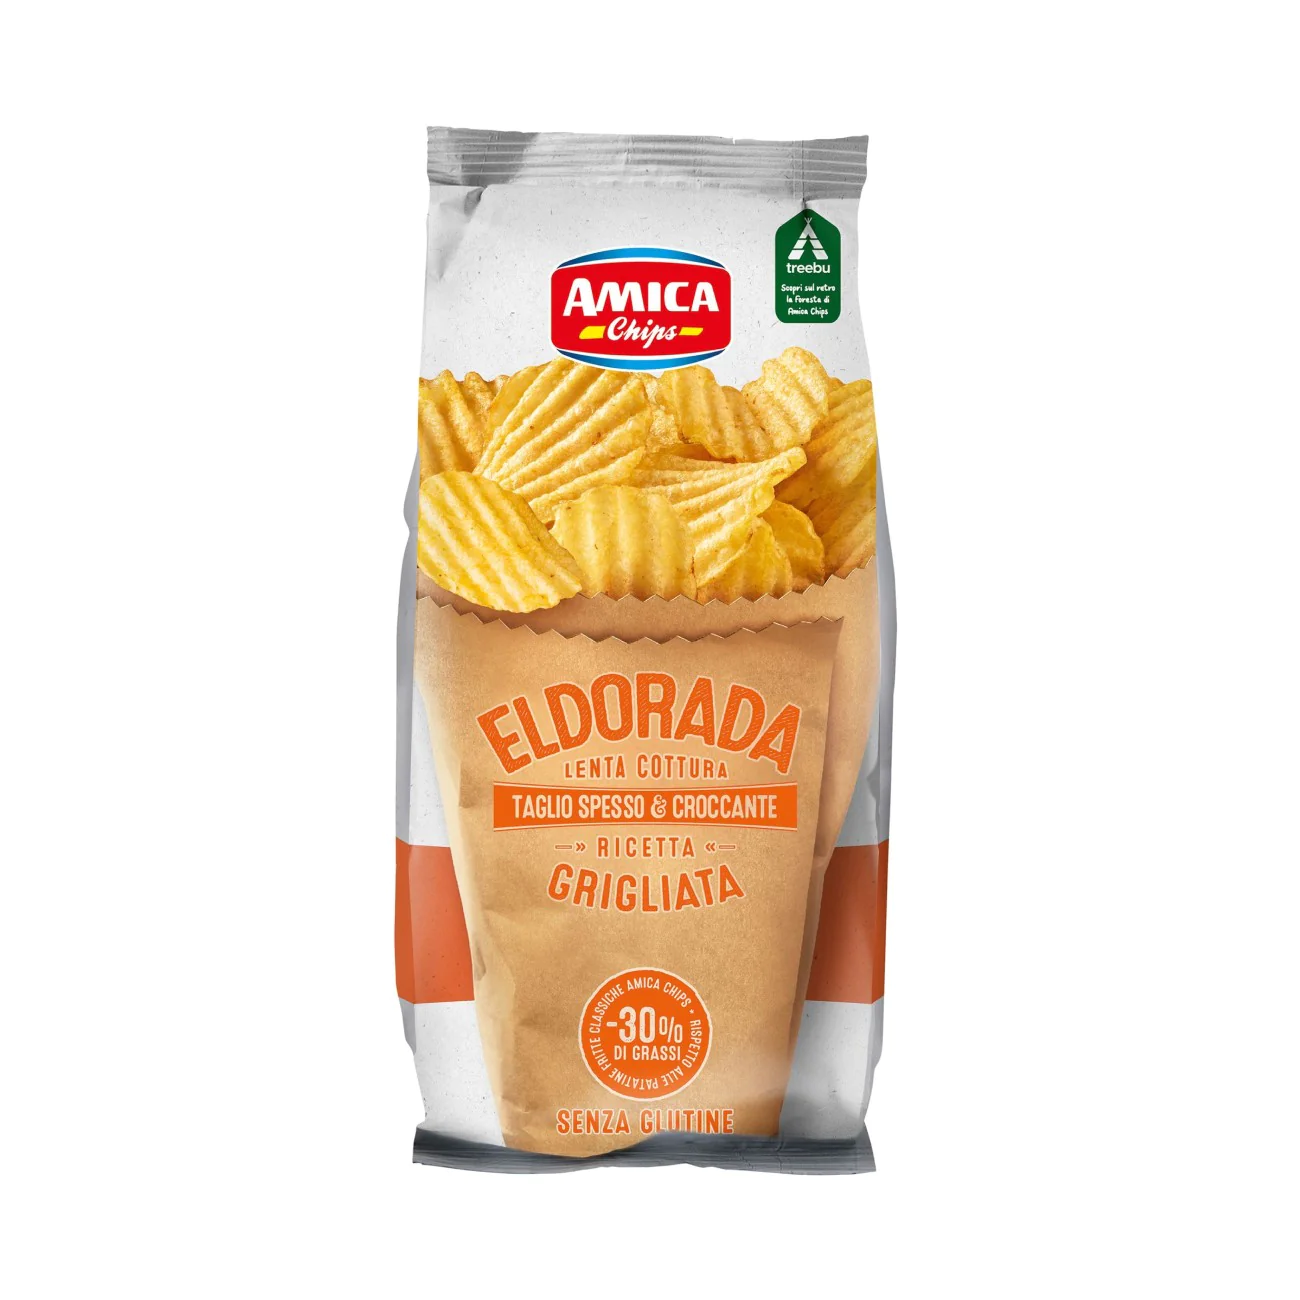 Amica potato chips 130g